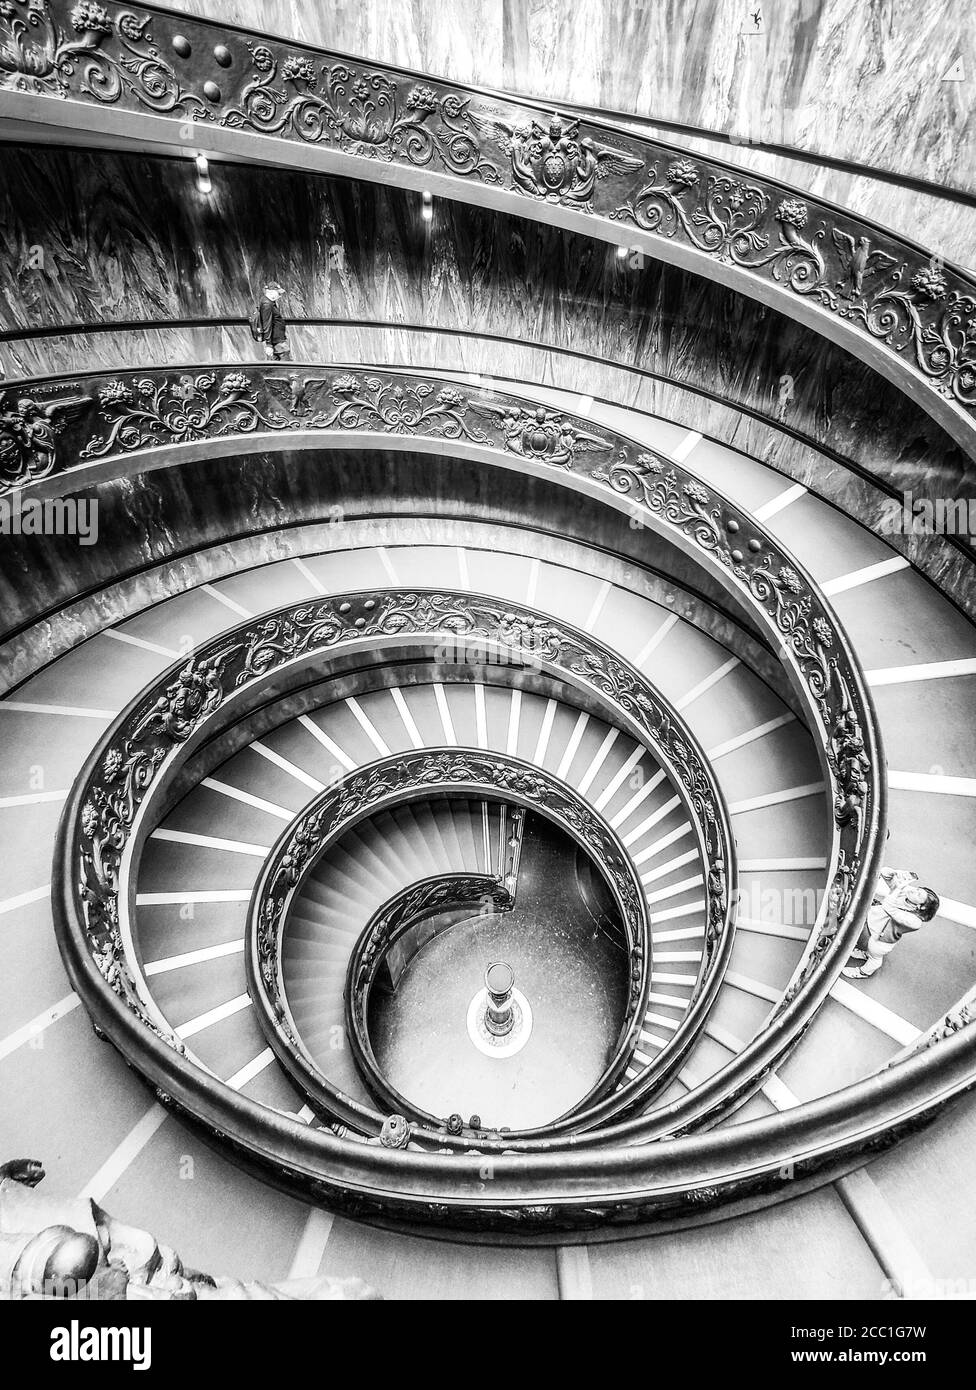 CITÉ DU VATICAN - 07 MAI 2018 : escalier en colimaçon dans les musées du Vatican, Cité du Vatican. Image en noir et blanc. Banque D'Images